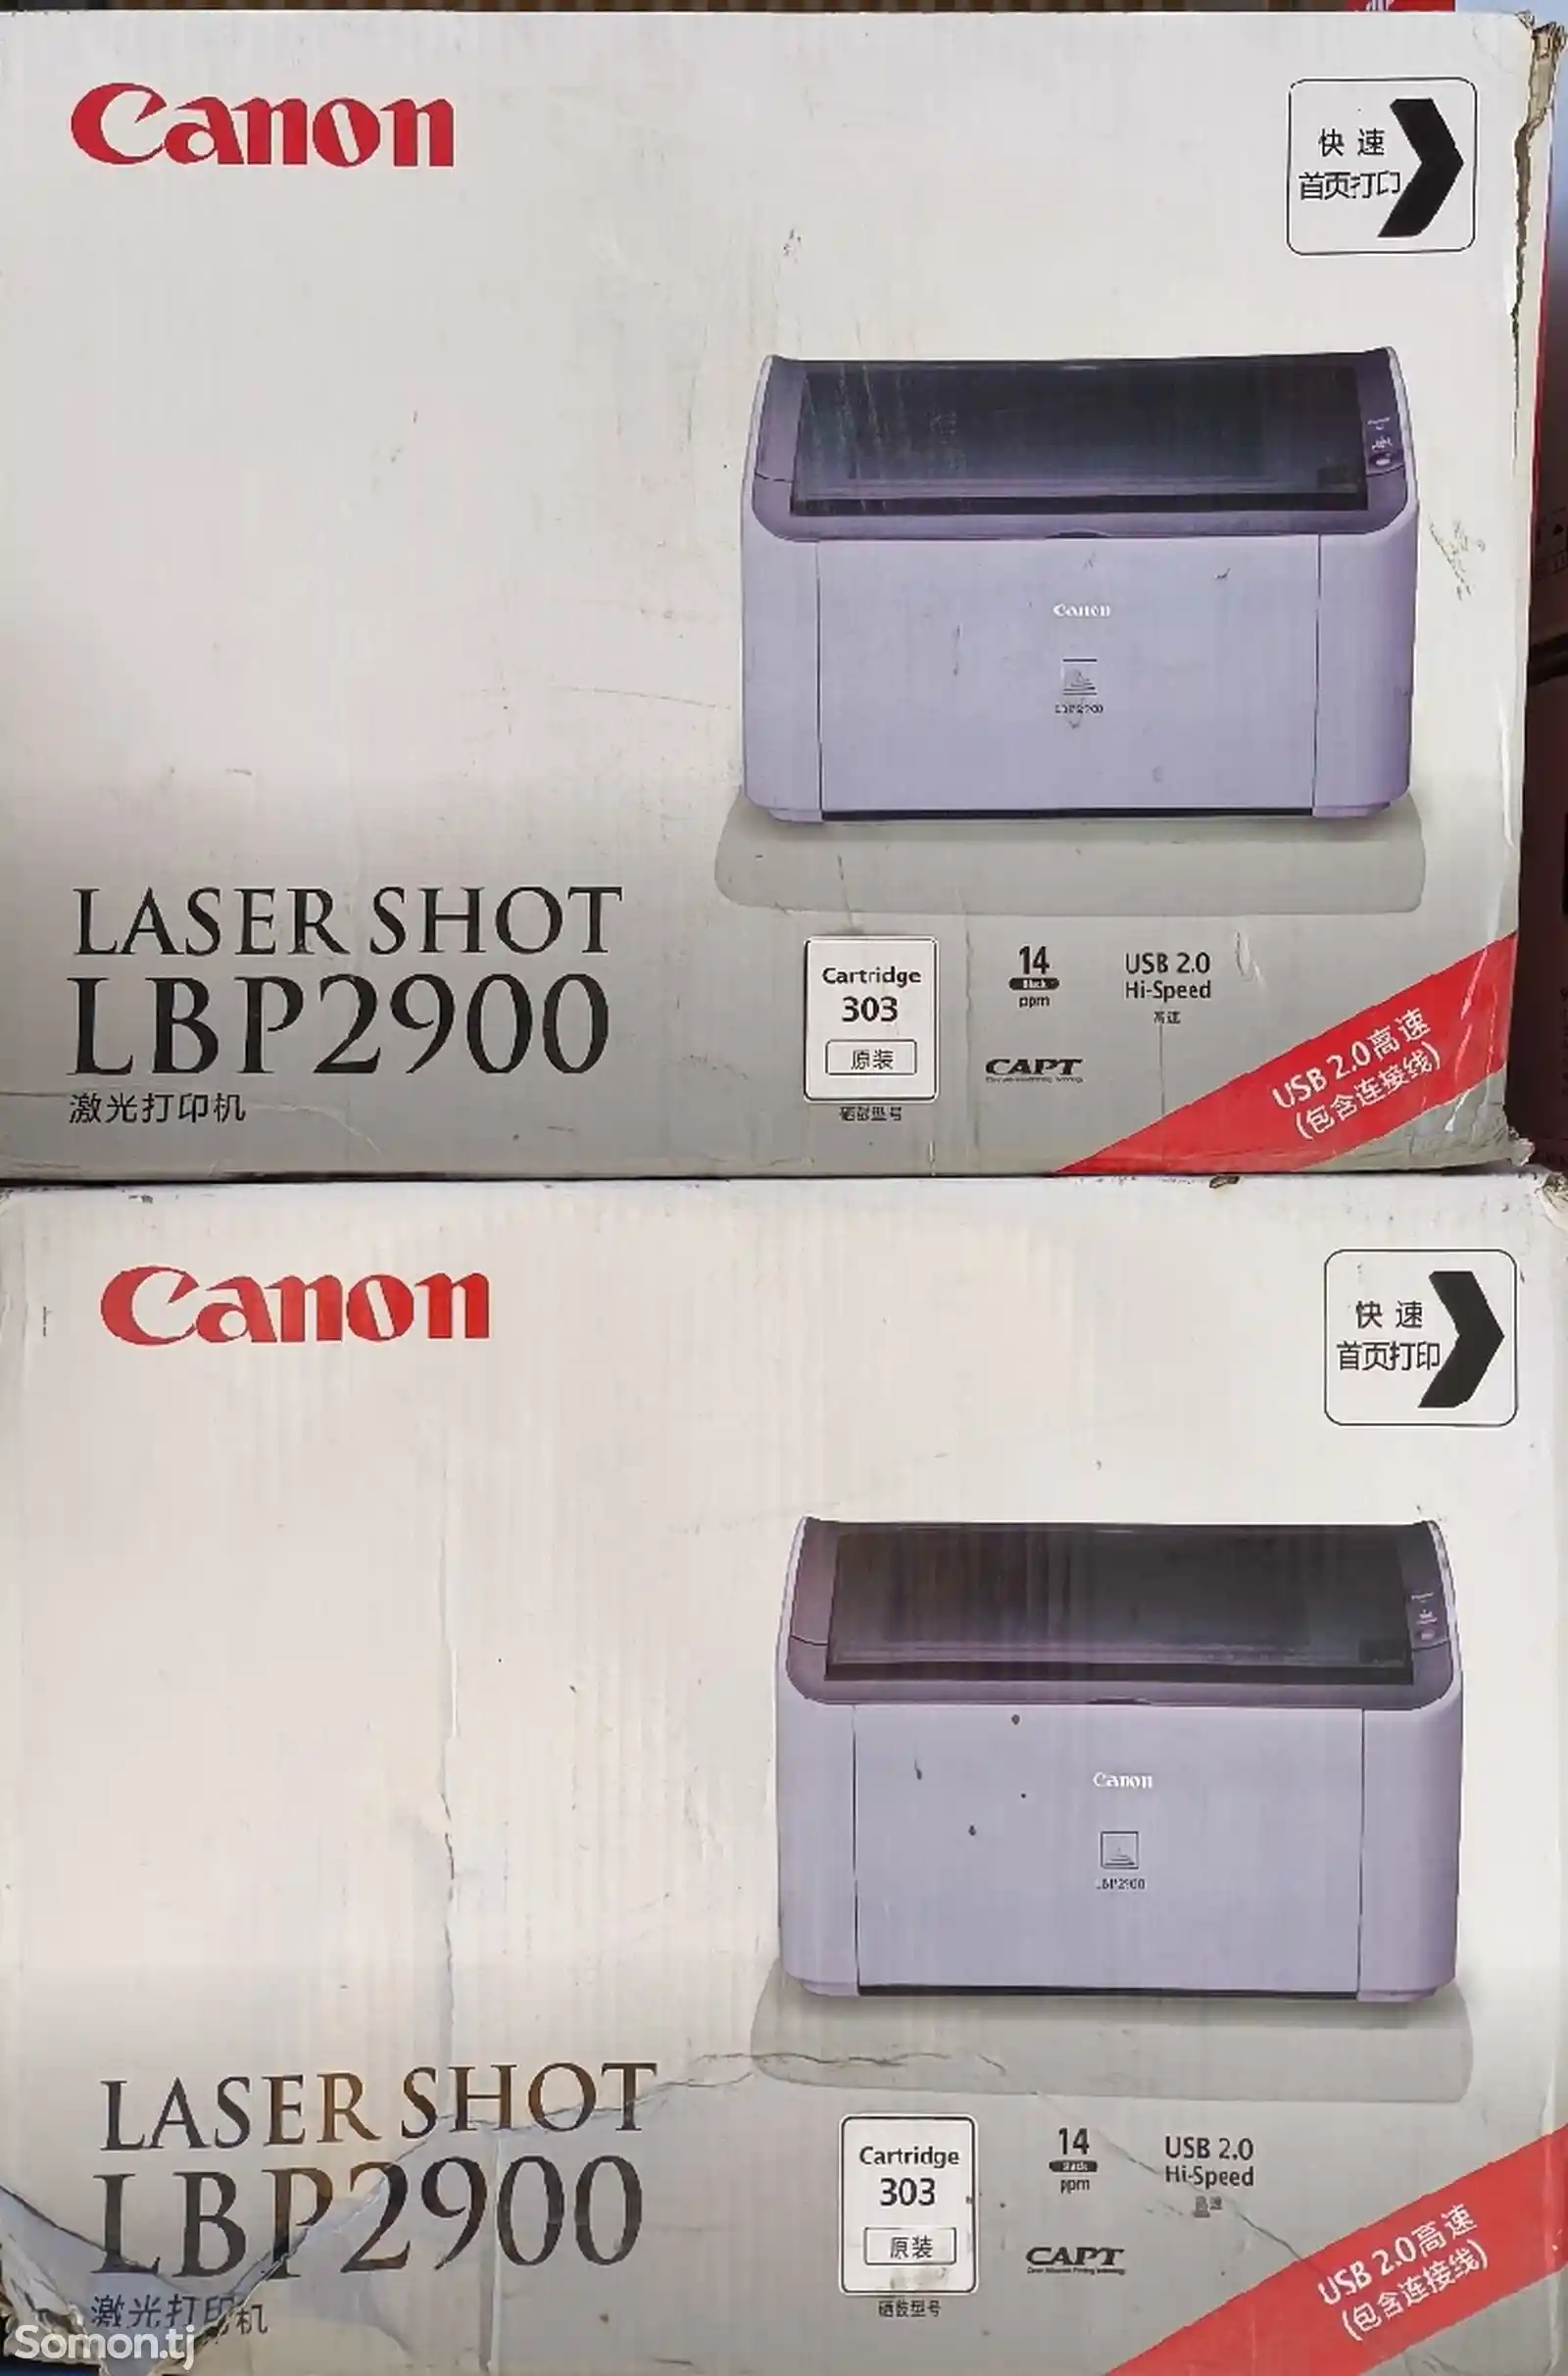 Canon Laser Shot LBP2900